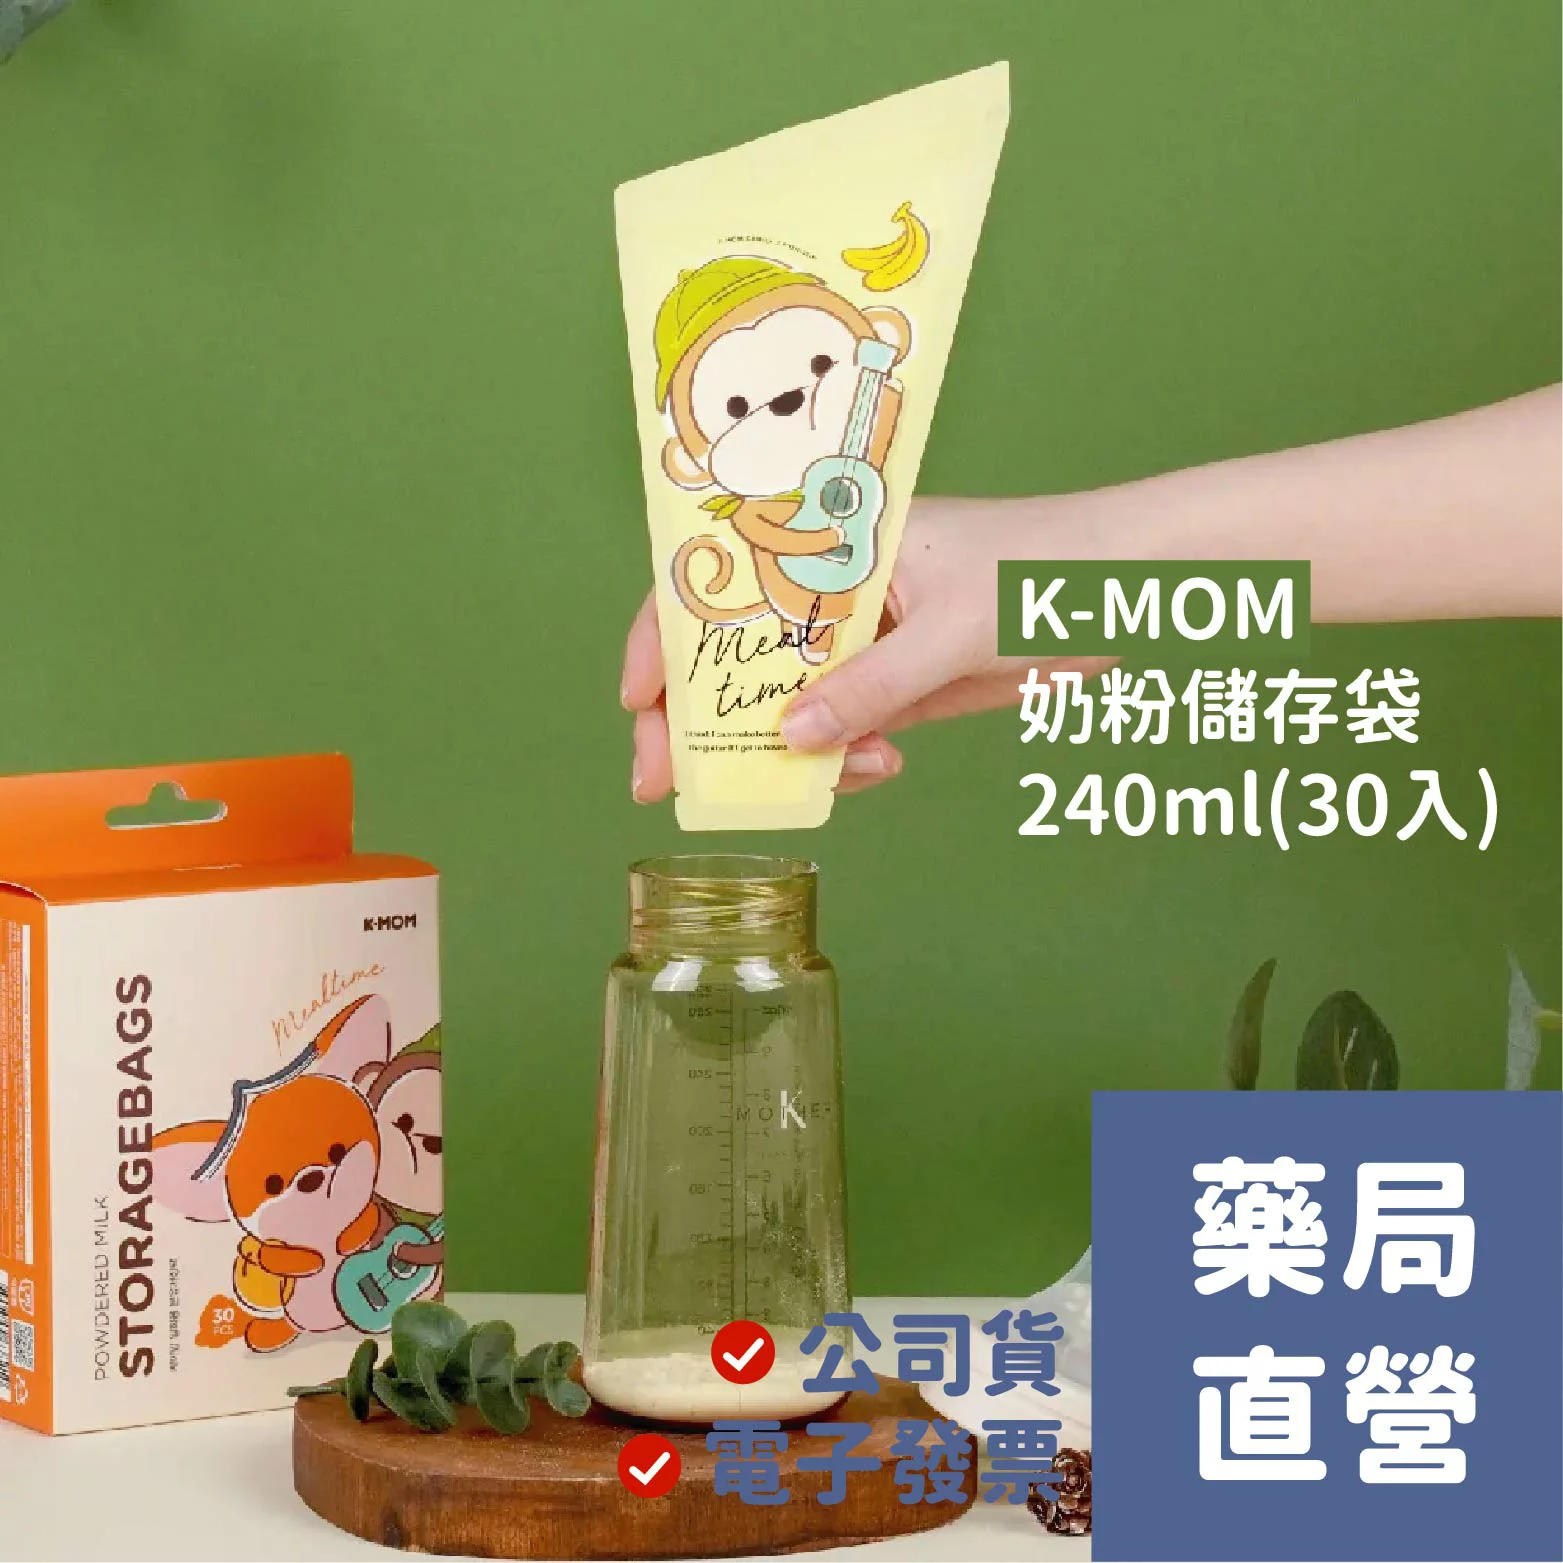 [禾坊藥局]K-MOM 奶粉儲存袋240ml(30入) 攜帶方便 育嬰好幫手 韓國原裝